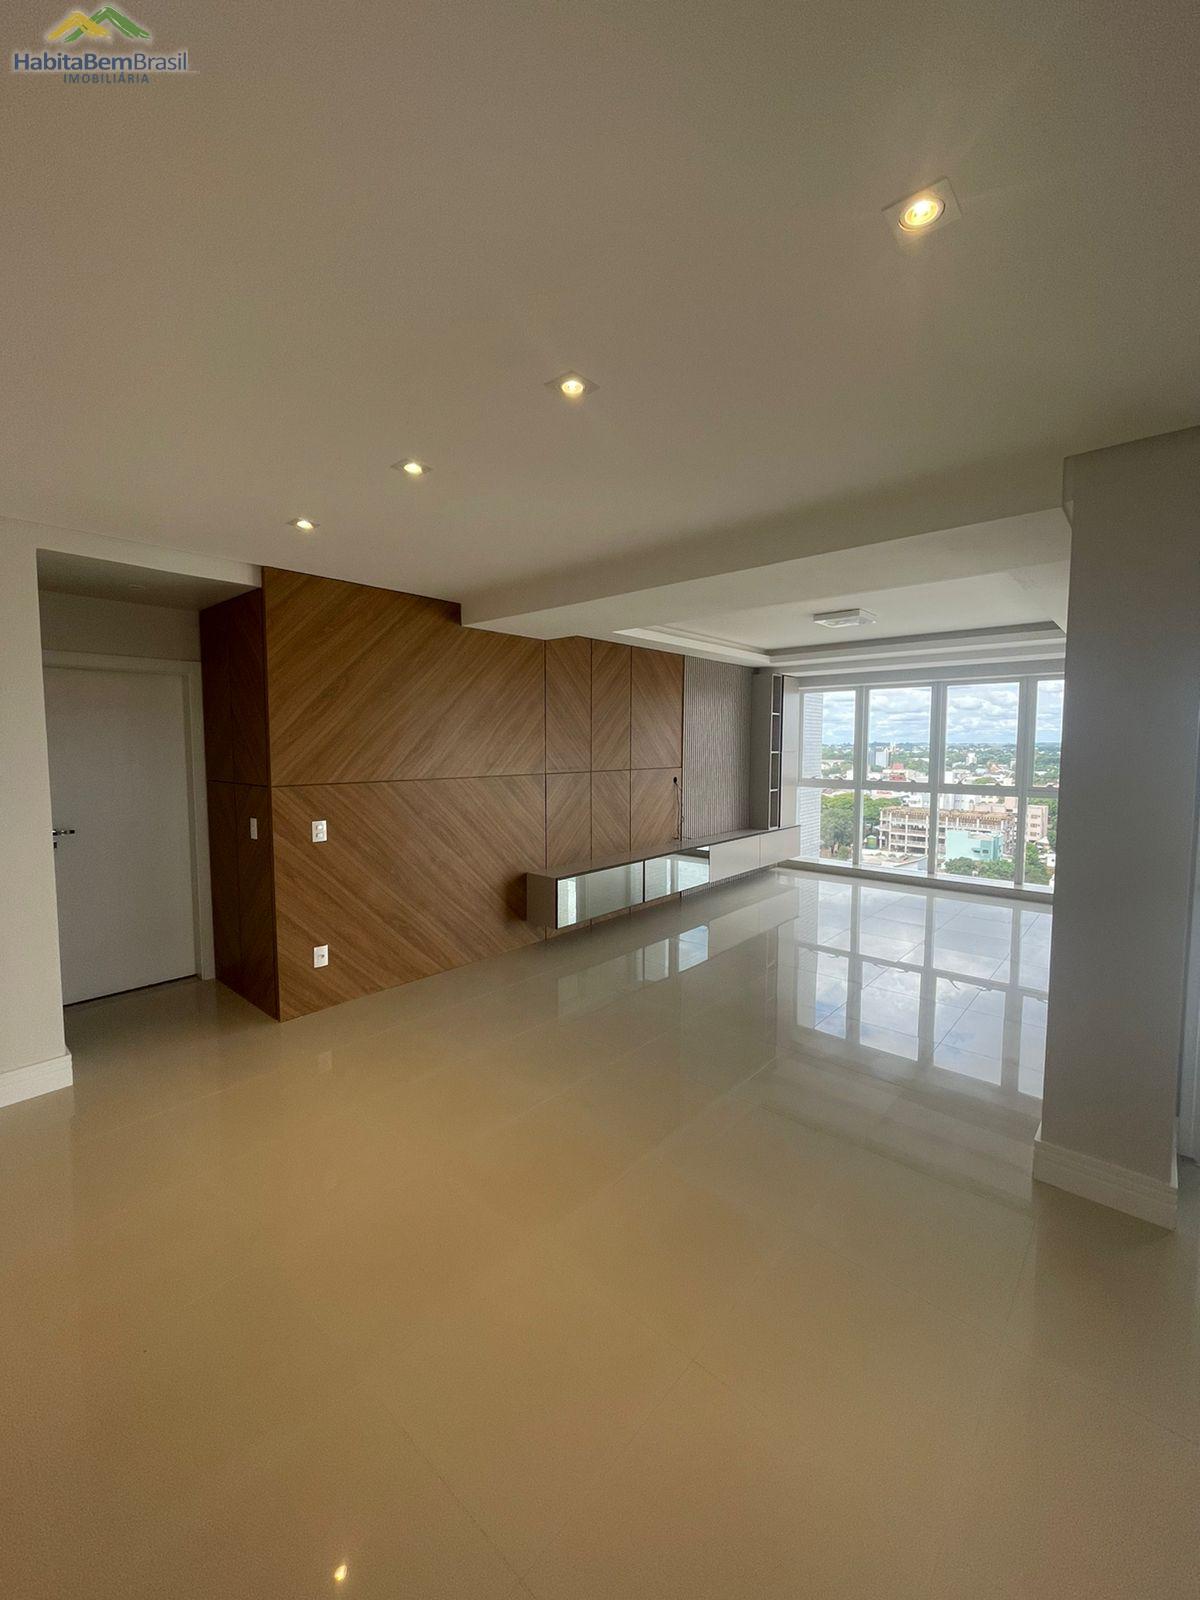 Apartamento com 3 dormitórios à venda,250.82 m², CENTRO, TOLEDO - PR